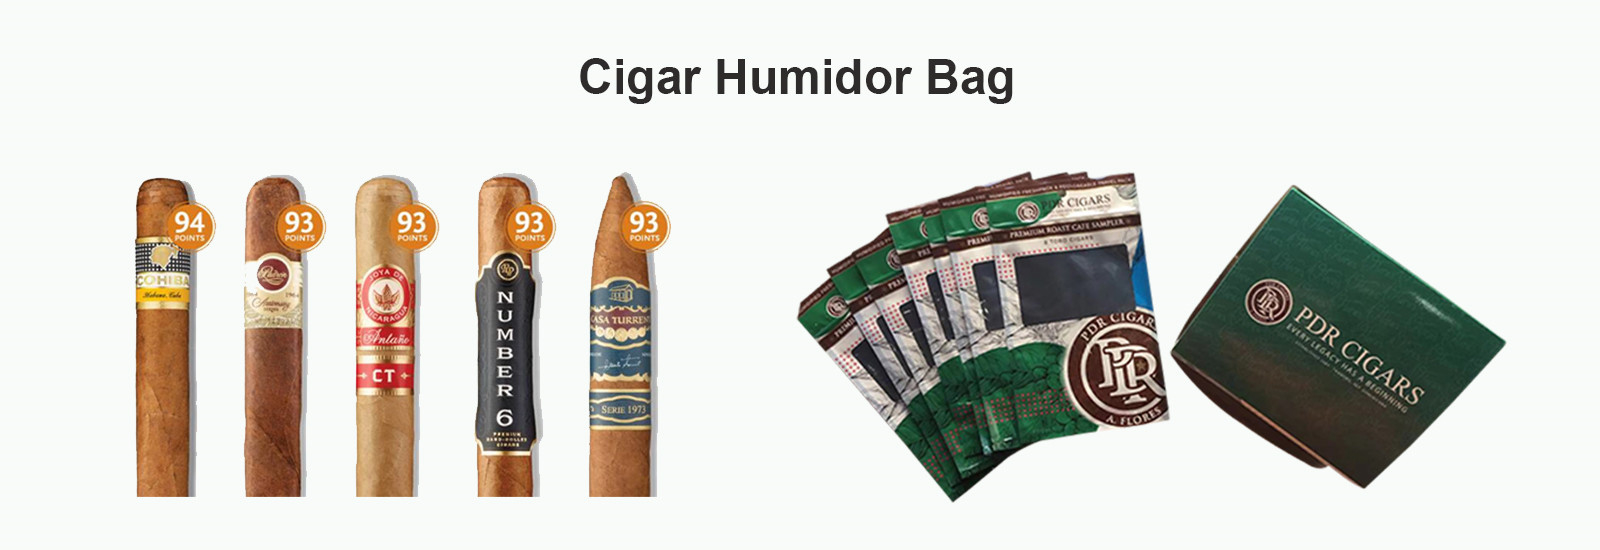 Zigarren-Luftfeuchtigkeitsregler-Taschen